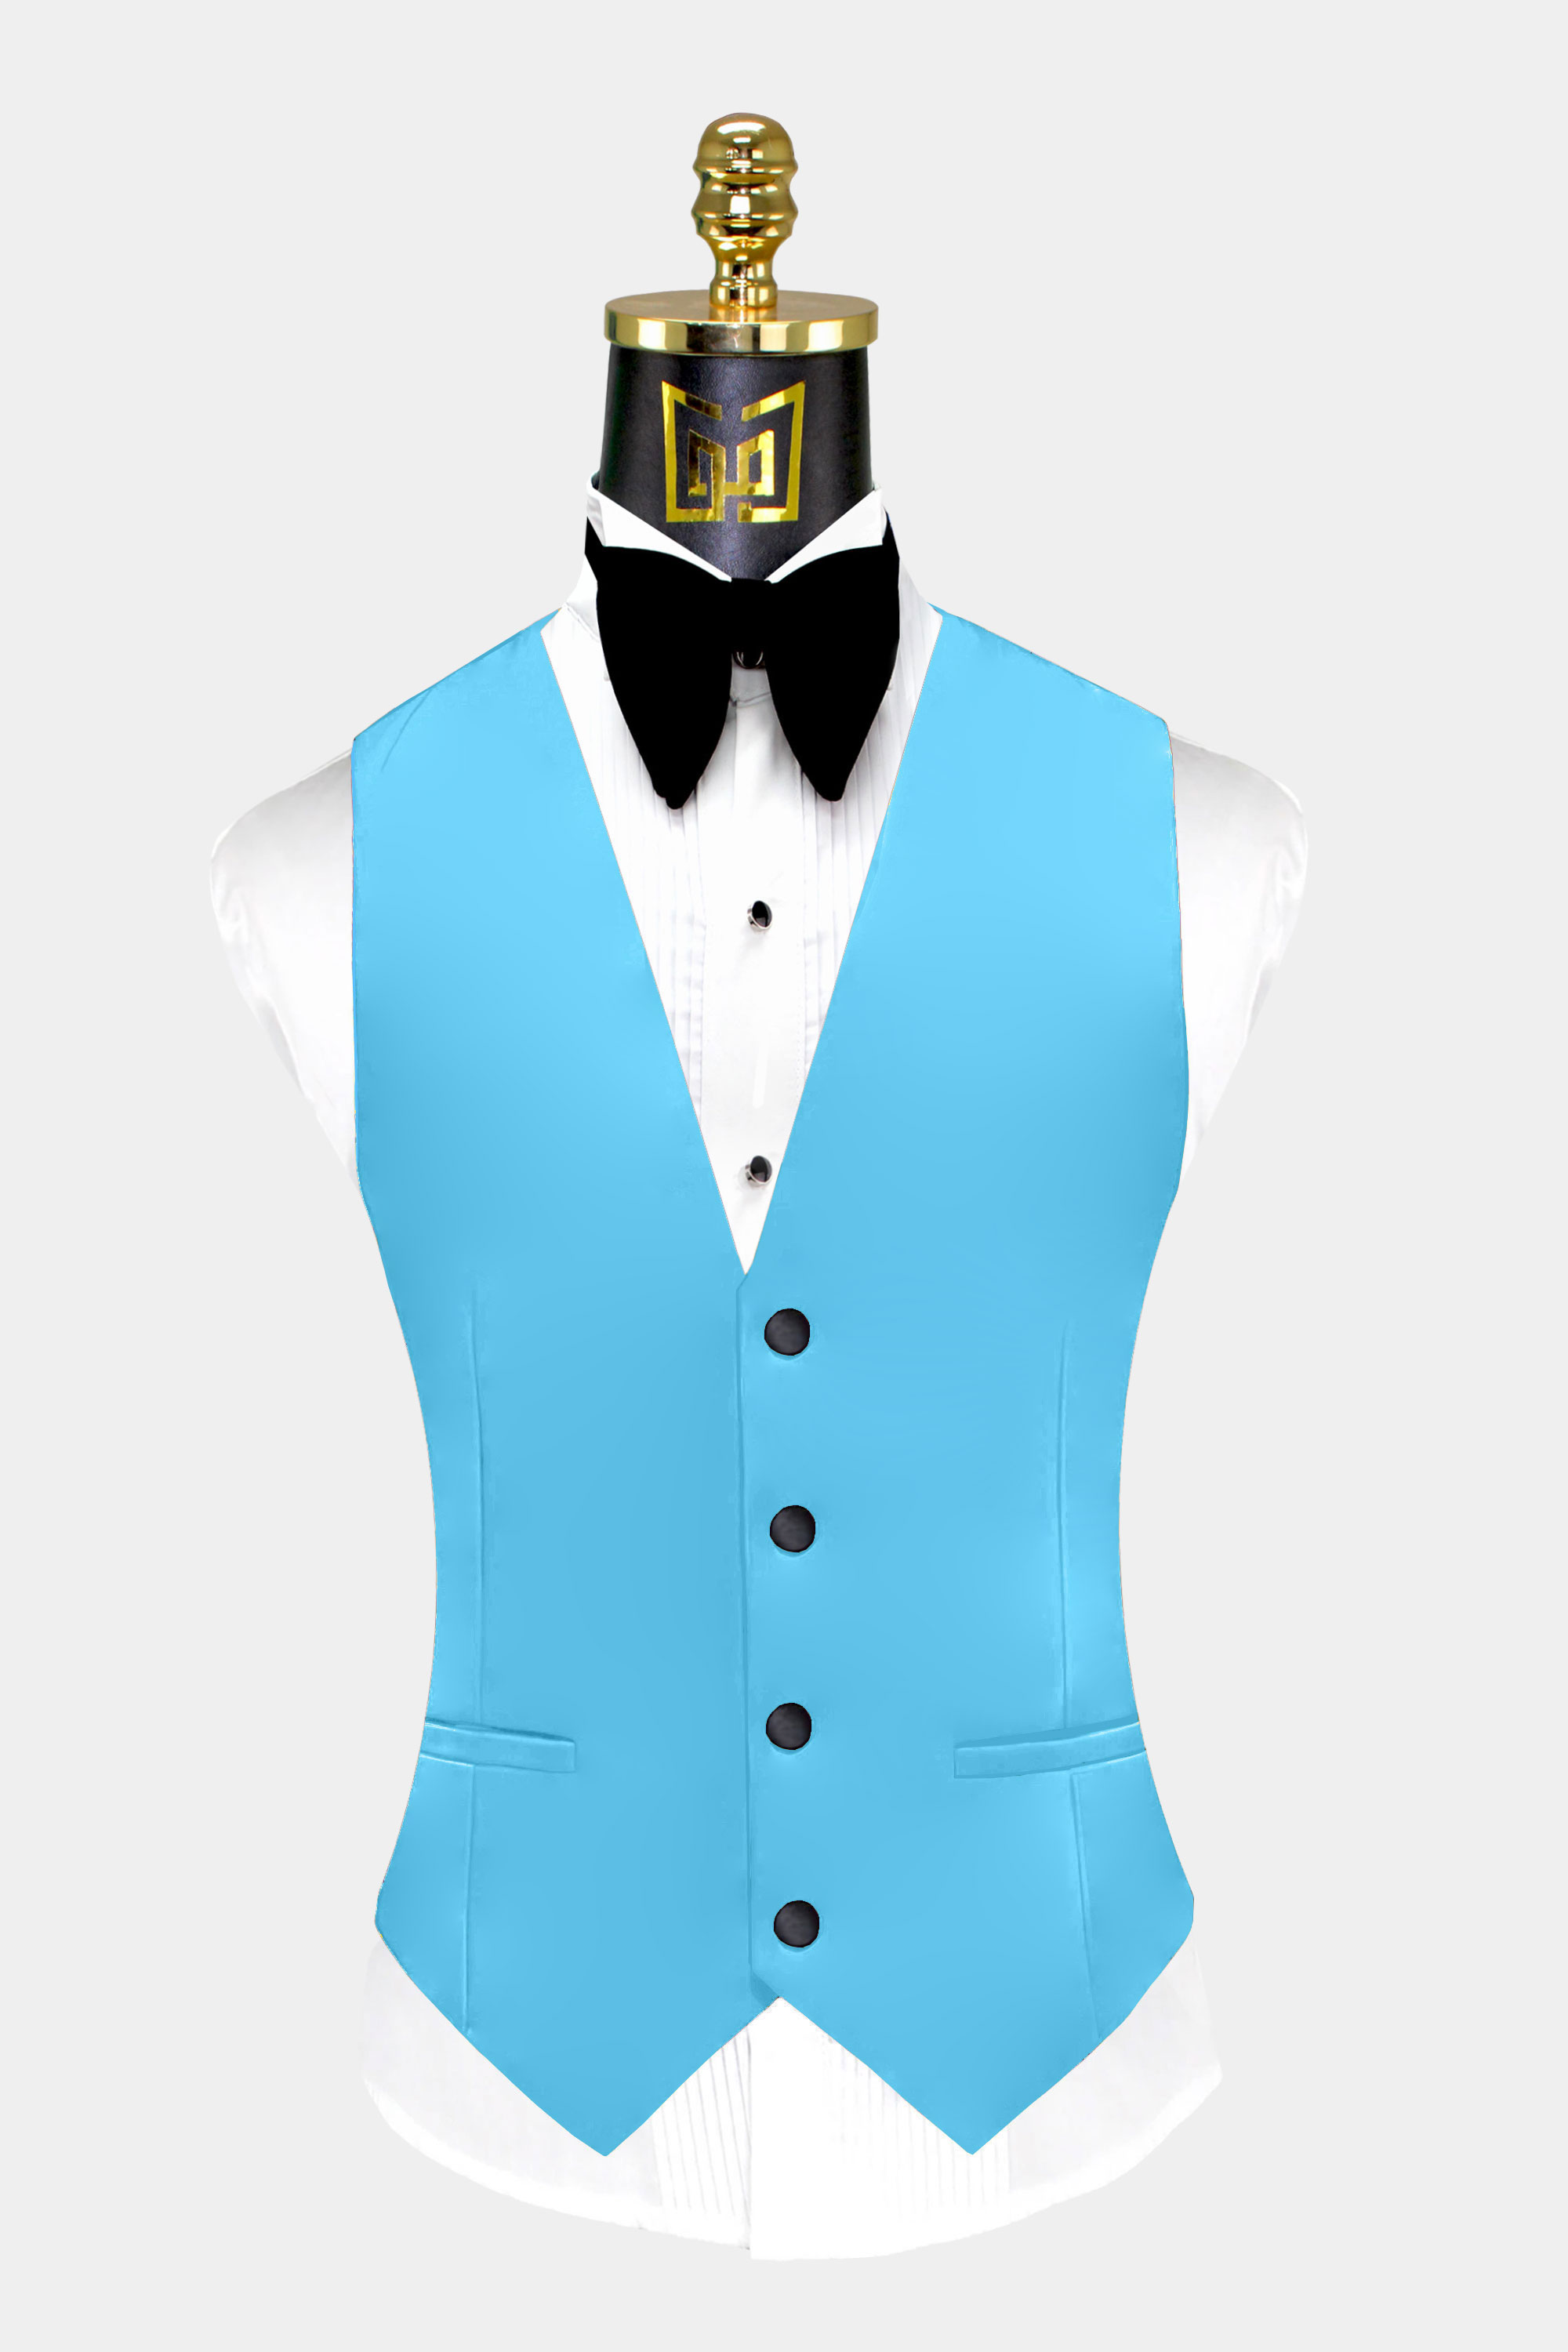 Mens-Light-Sky-Blue-Tuxedo-Vest-Groom-Wedding-Suit-Waistcoat-from-Gentlemansguru.com